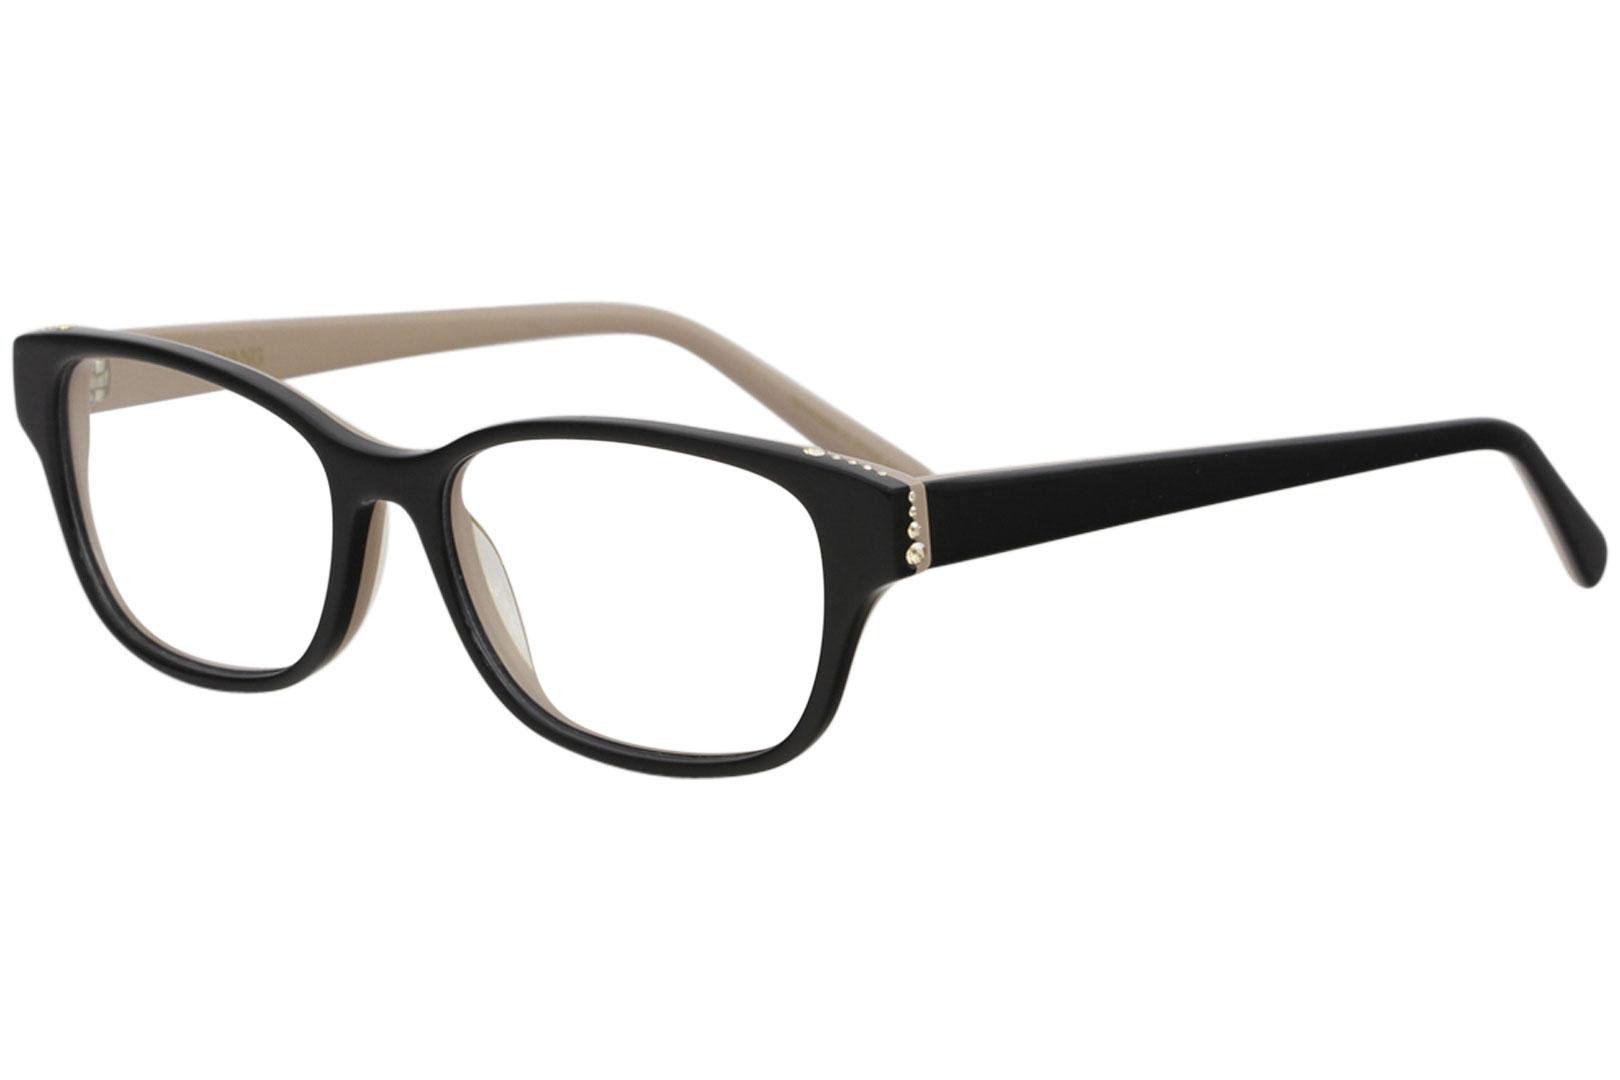 Eyeglasses  Full Rim Optical Frame - Black   BK - Lens 51 Bridge 15 Temple 135mm - Vera Wang Shandae